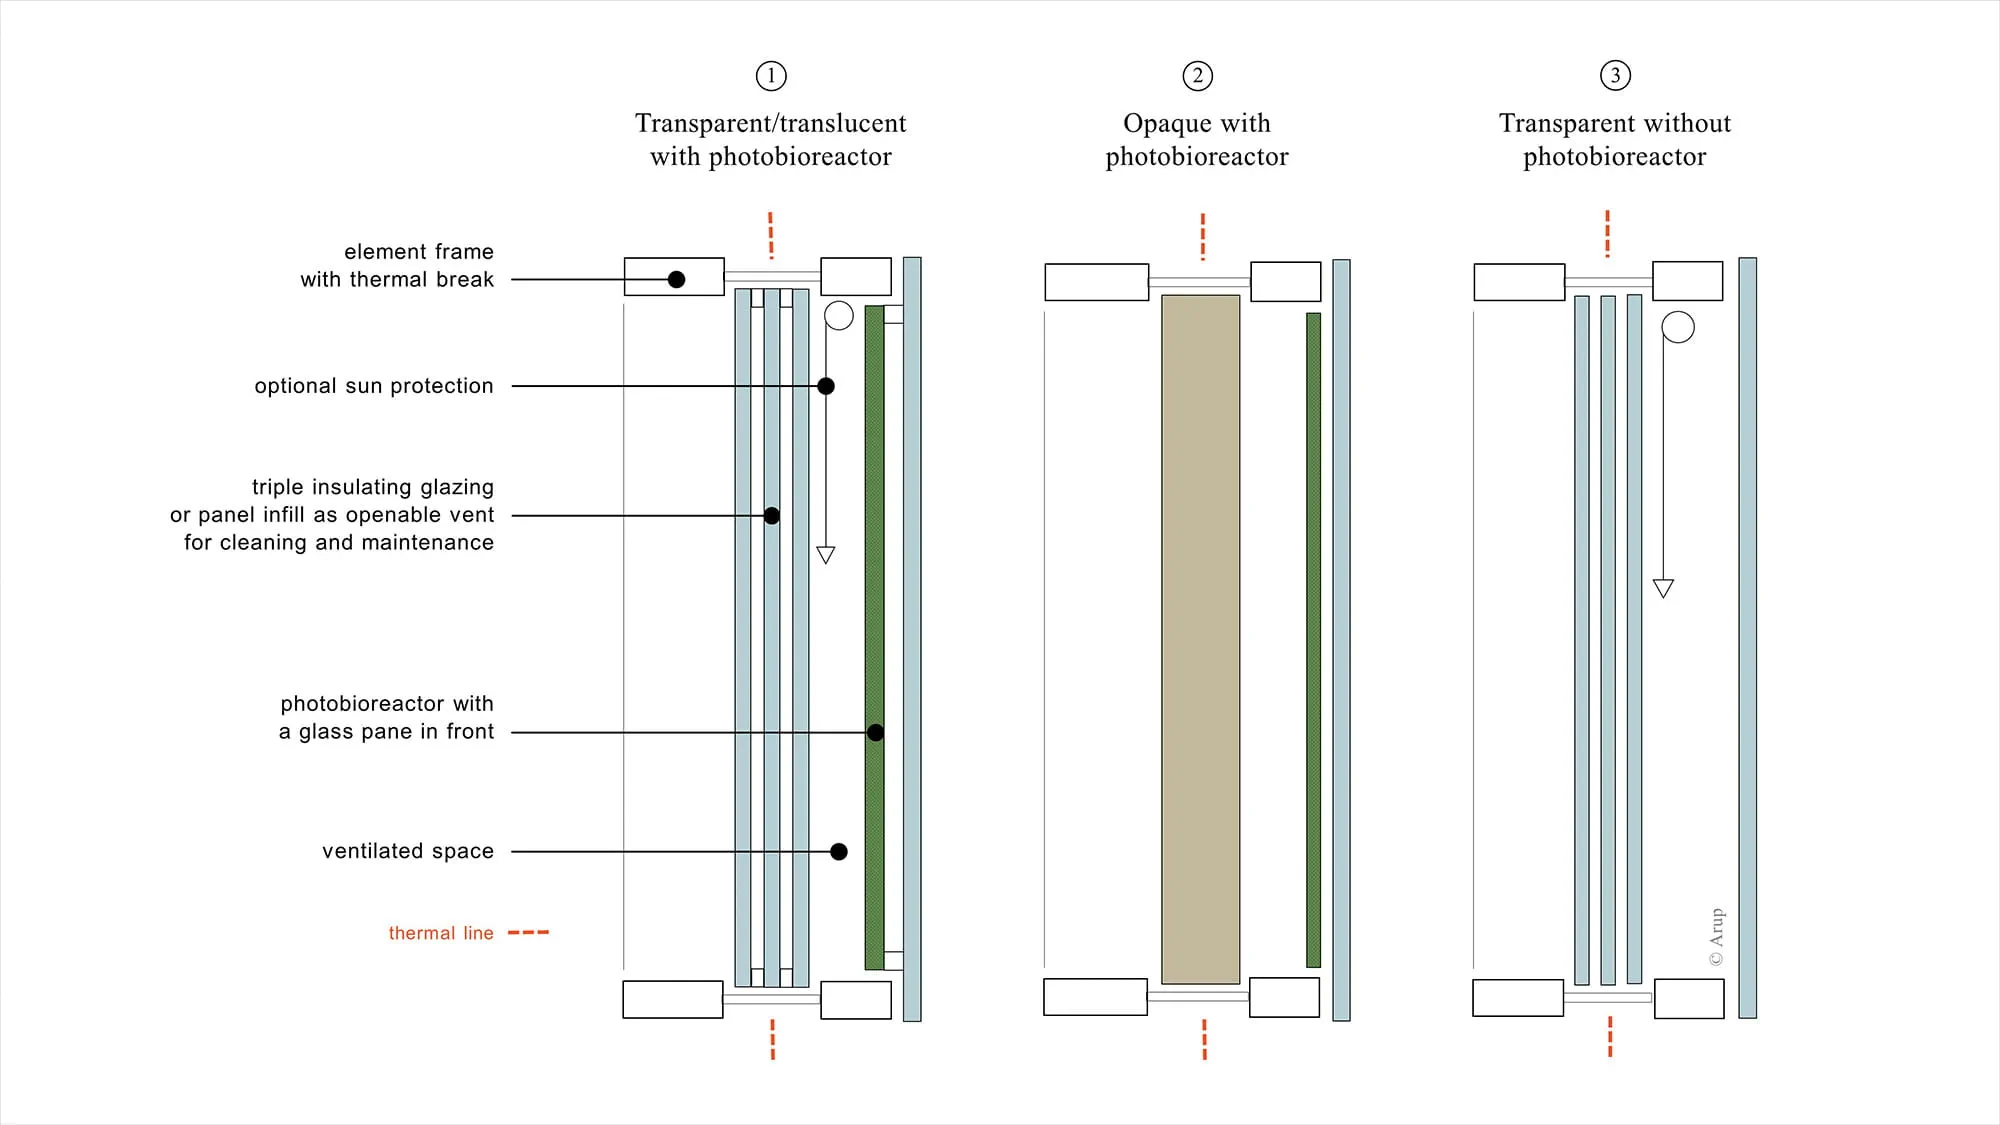 Scheme of the multilayer construction of the facade element as a modular facade system with integrated photobioreactor